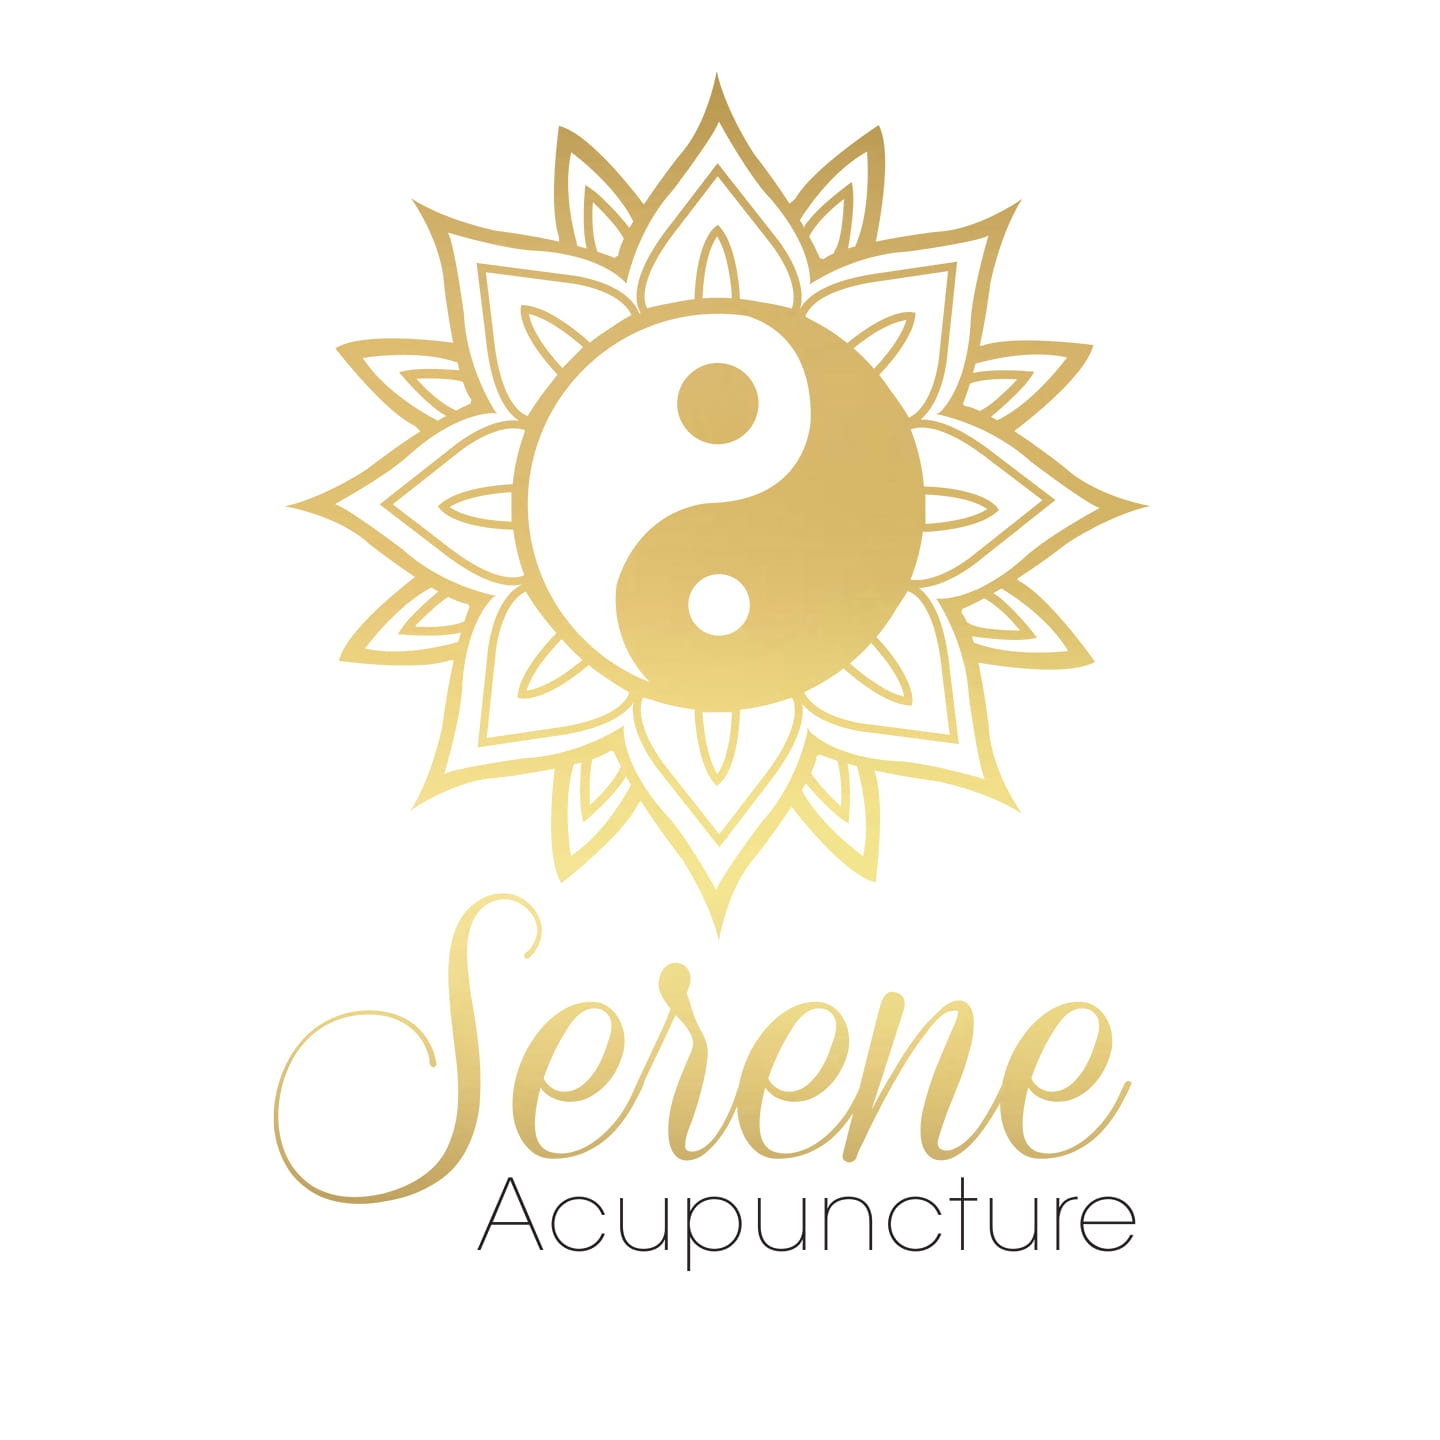 Serene Acupuncture